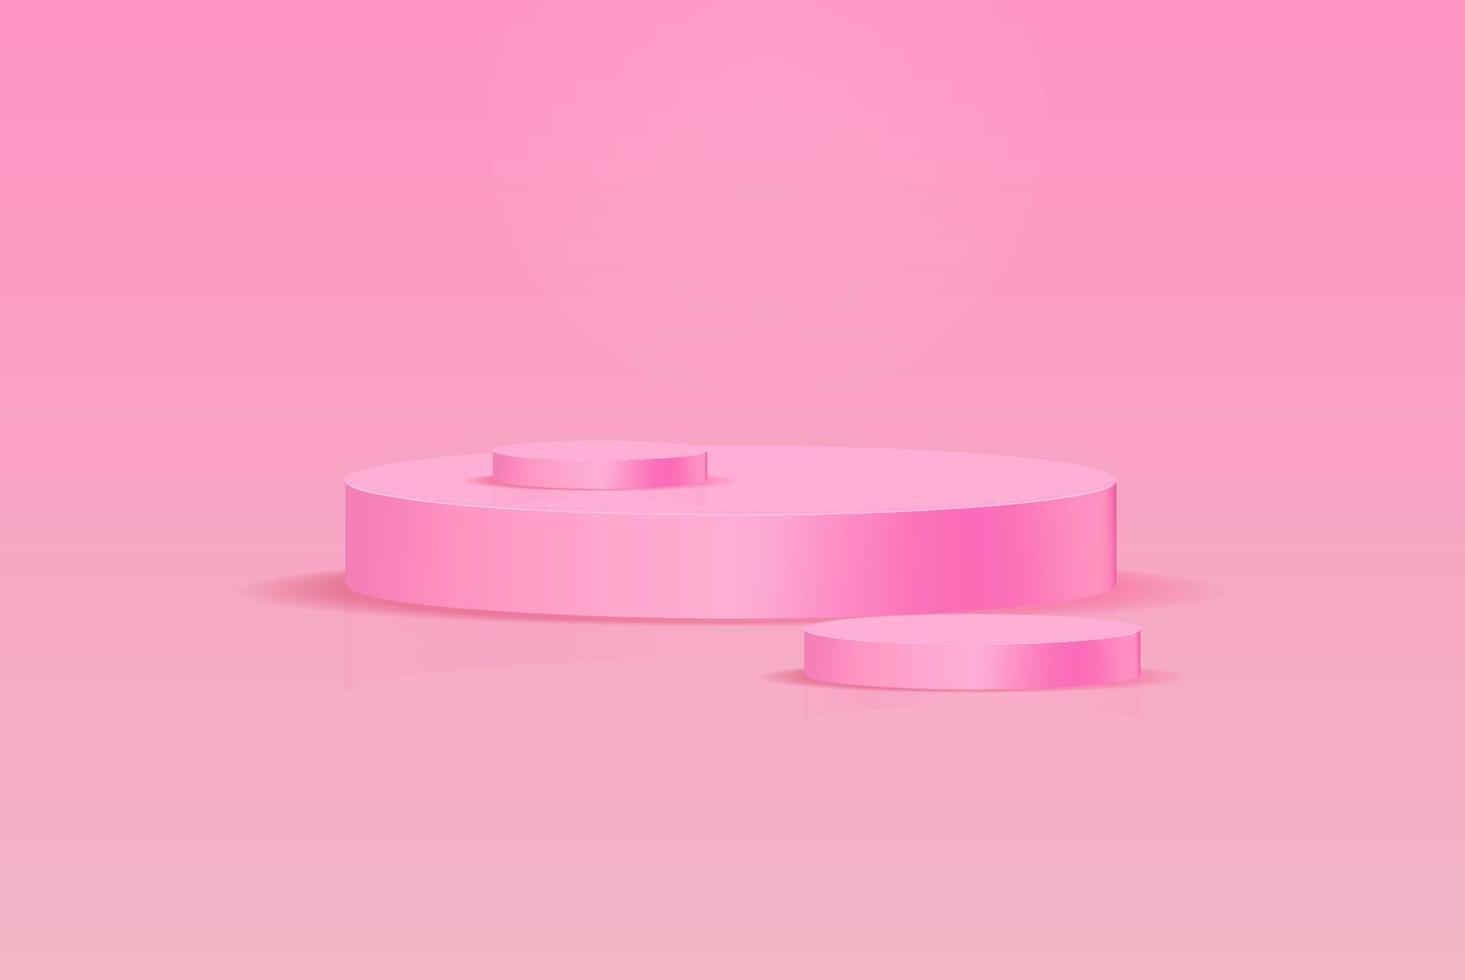 sfondo vettoriale 3d rendering rosa con podio rosa 3d e scena minima della parete rosa, minimo podio sfondo rosa rendering 3d palcoscenico astratto grigio. rendering di scena per prodotto su studio podio bianco